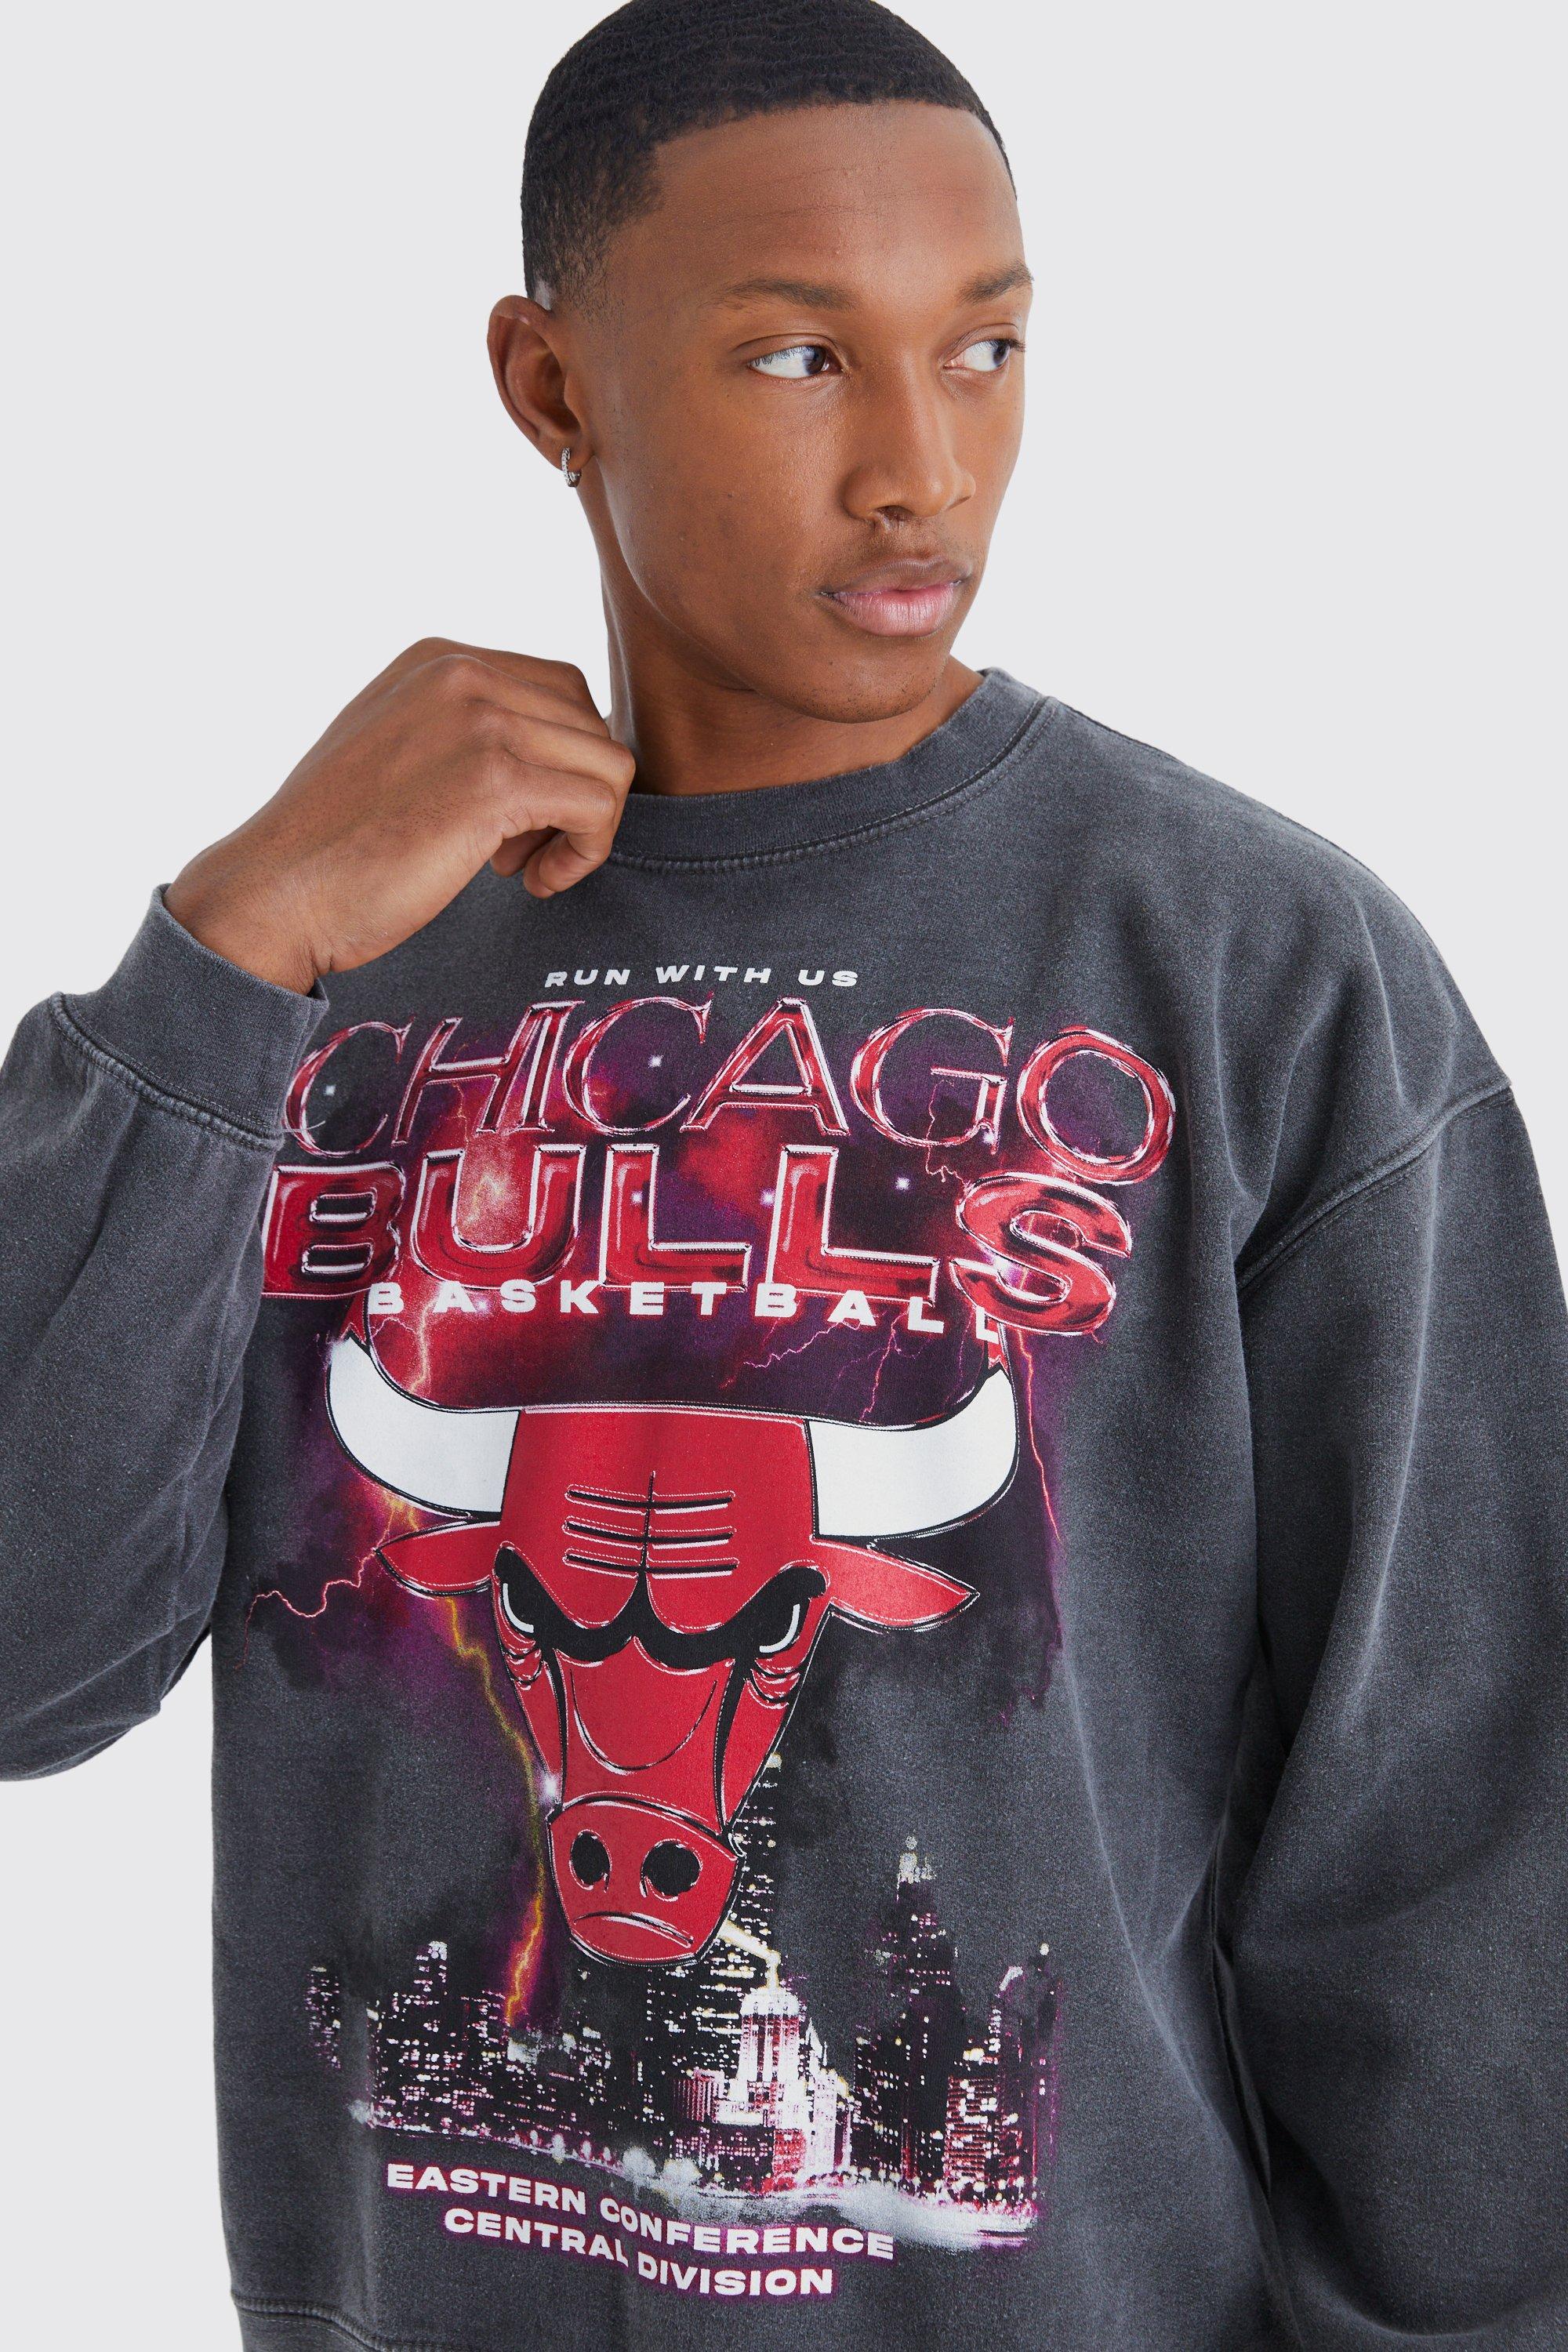 Men's Long-Sleeve Chicago Bulls Graphic Tee, Men's Tops